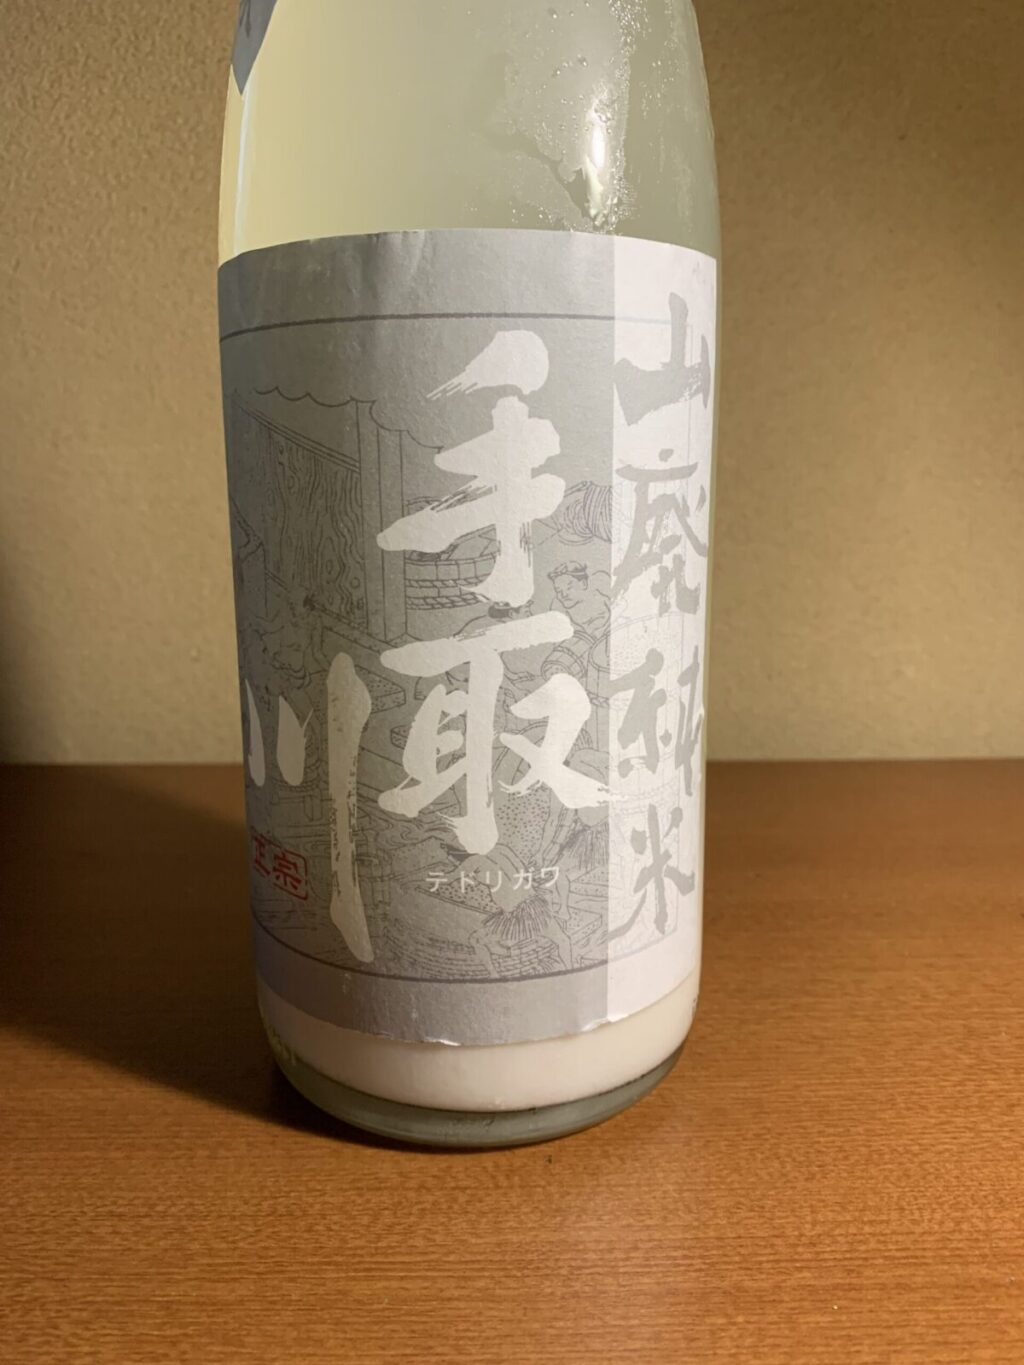 石川の日本酒『手取川 白い山廃純米』は穏やかな香りとクリーミーな味わい